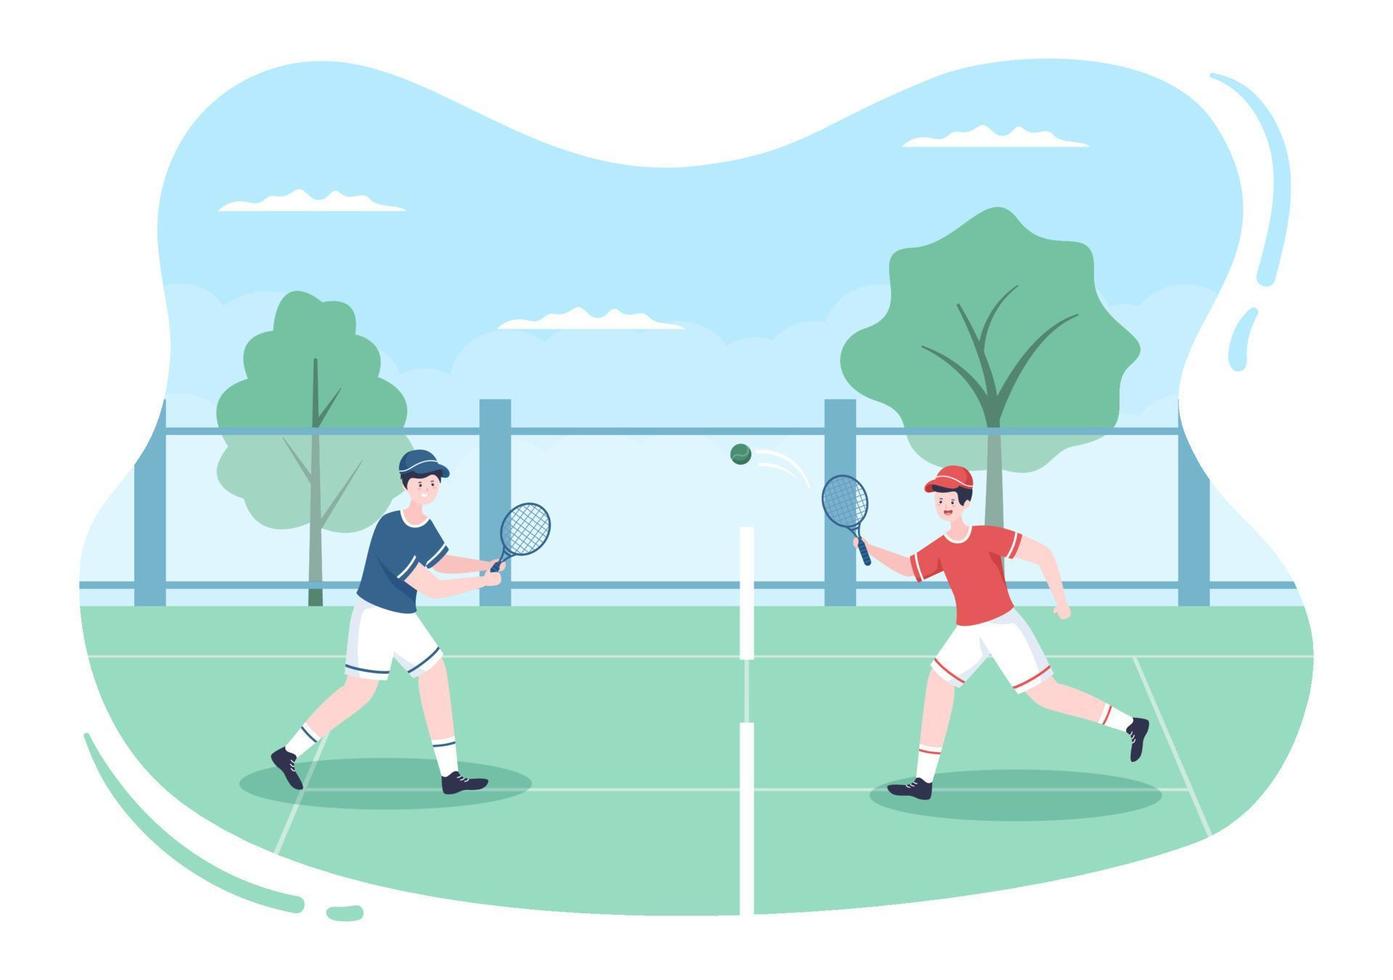 tenista com raquete na mão e bola na quadra. pessoas fazendo partida de esportes em ilustração de desenho animado plana vetor